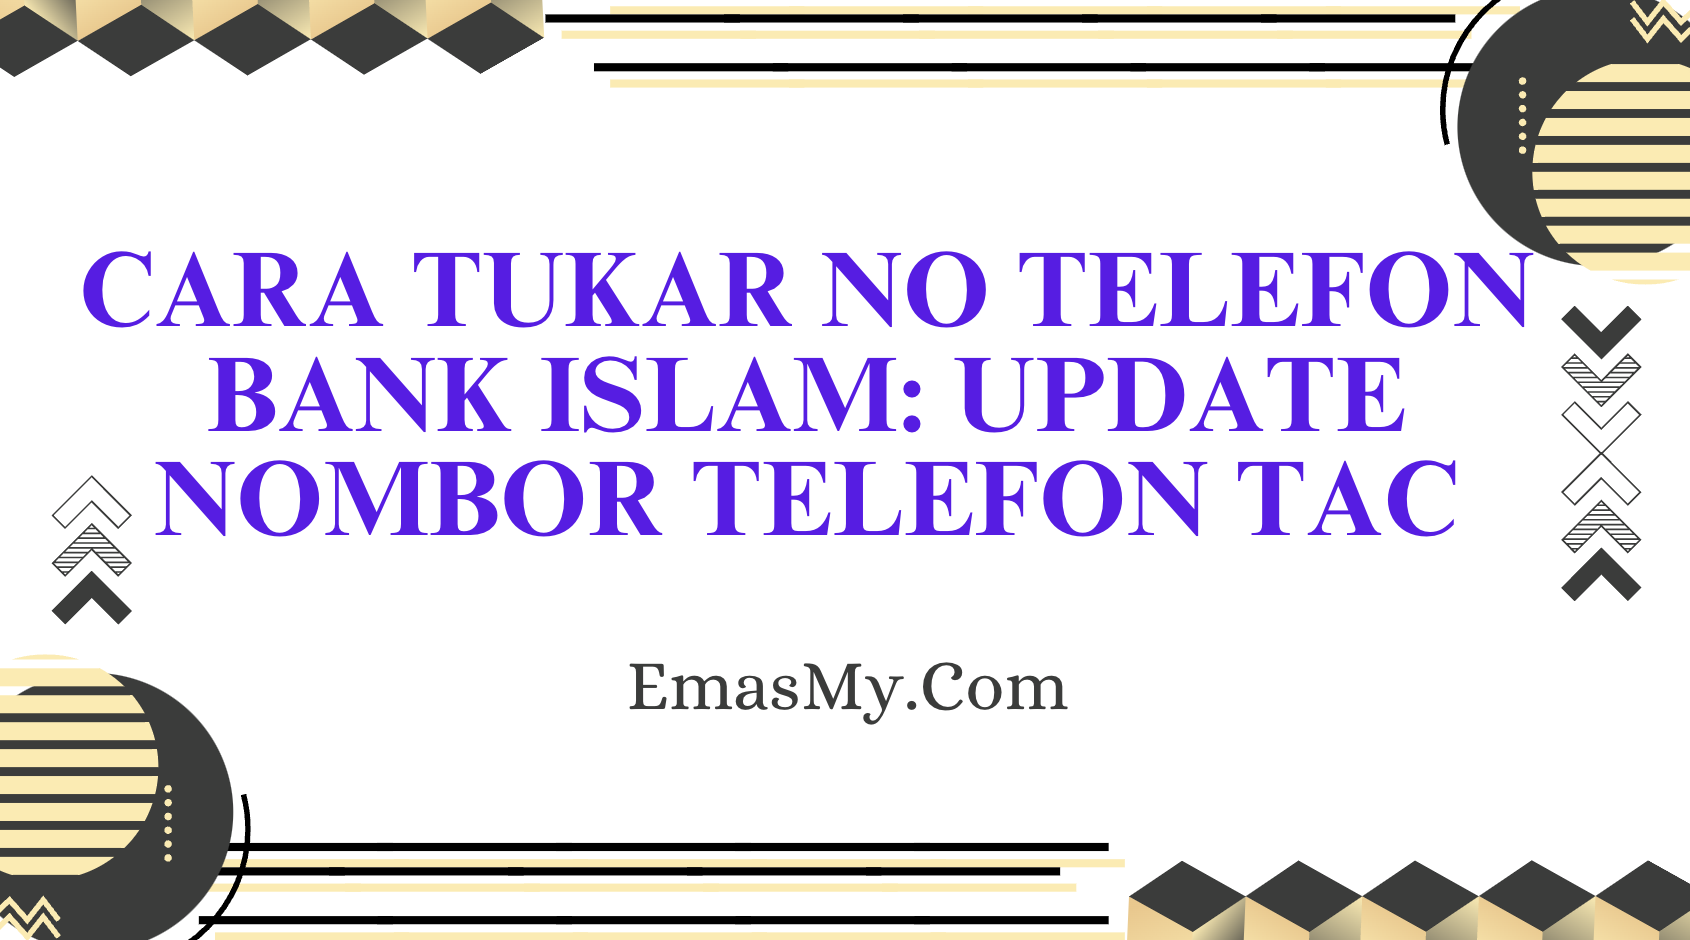 Cara Tukar No Telefon Bank Islam: Update Nombor Telefon TAC